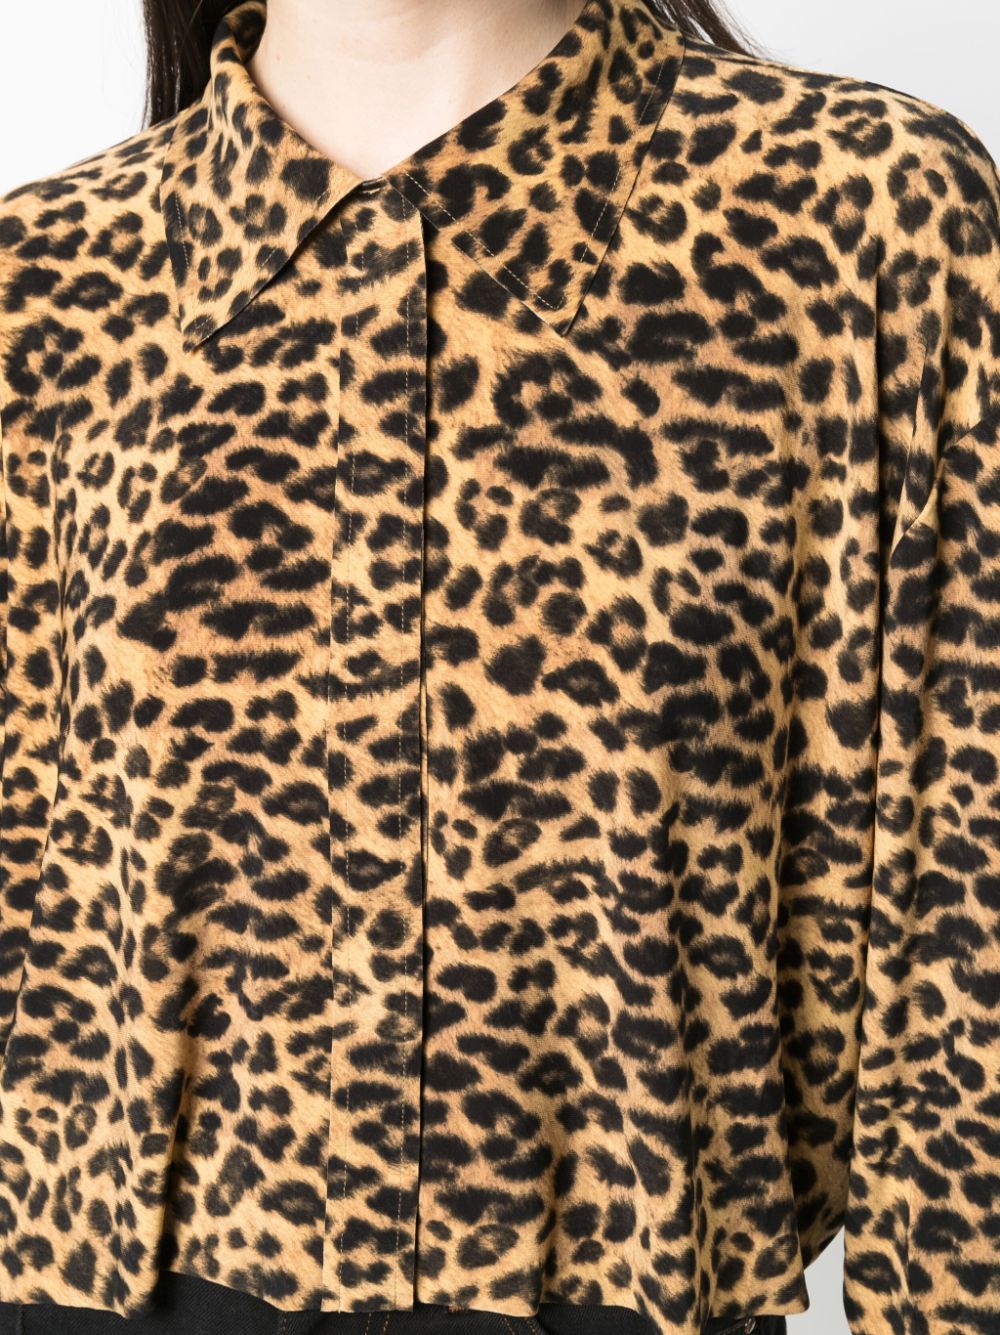 фото Norma kamali leopard-print cropped shirt